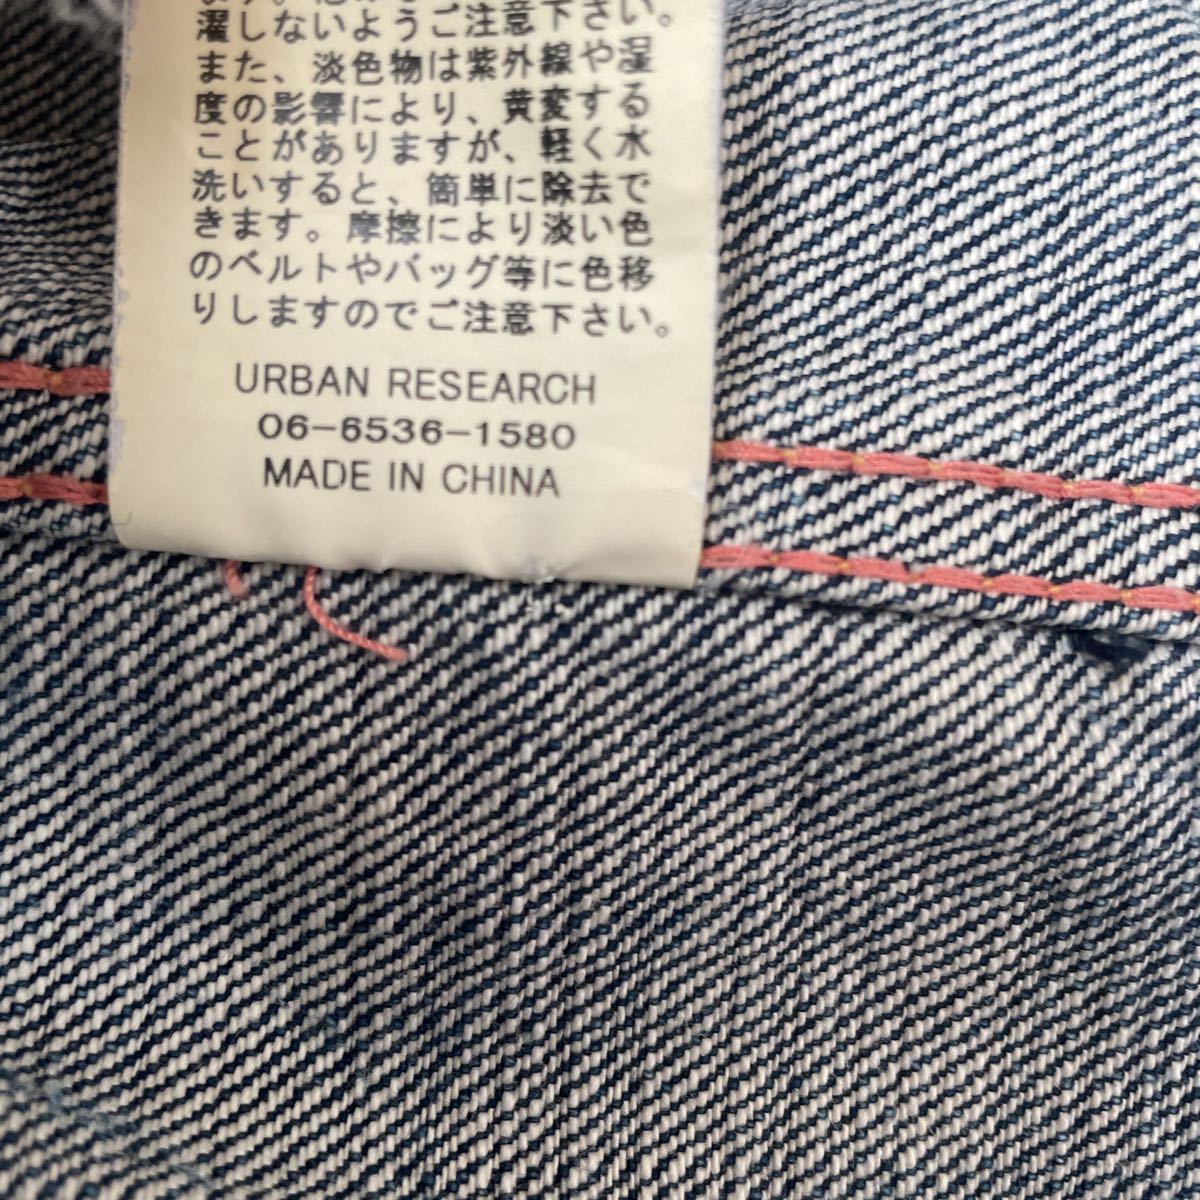  прекрасный товар G Jean Urban Research полная распродажа товар обычная цена 30000 иен ранг Denim жакет популярный товар 